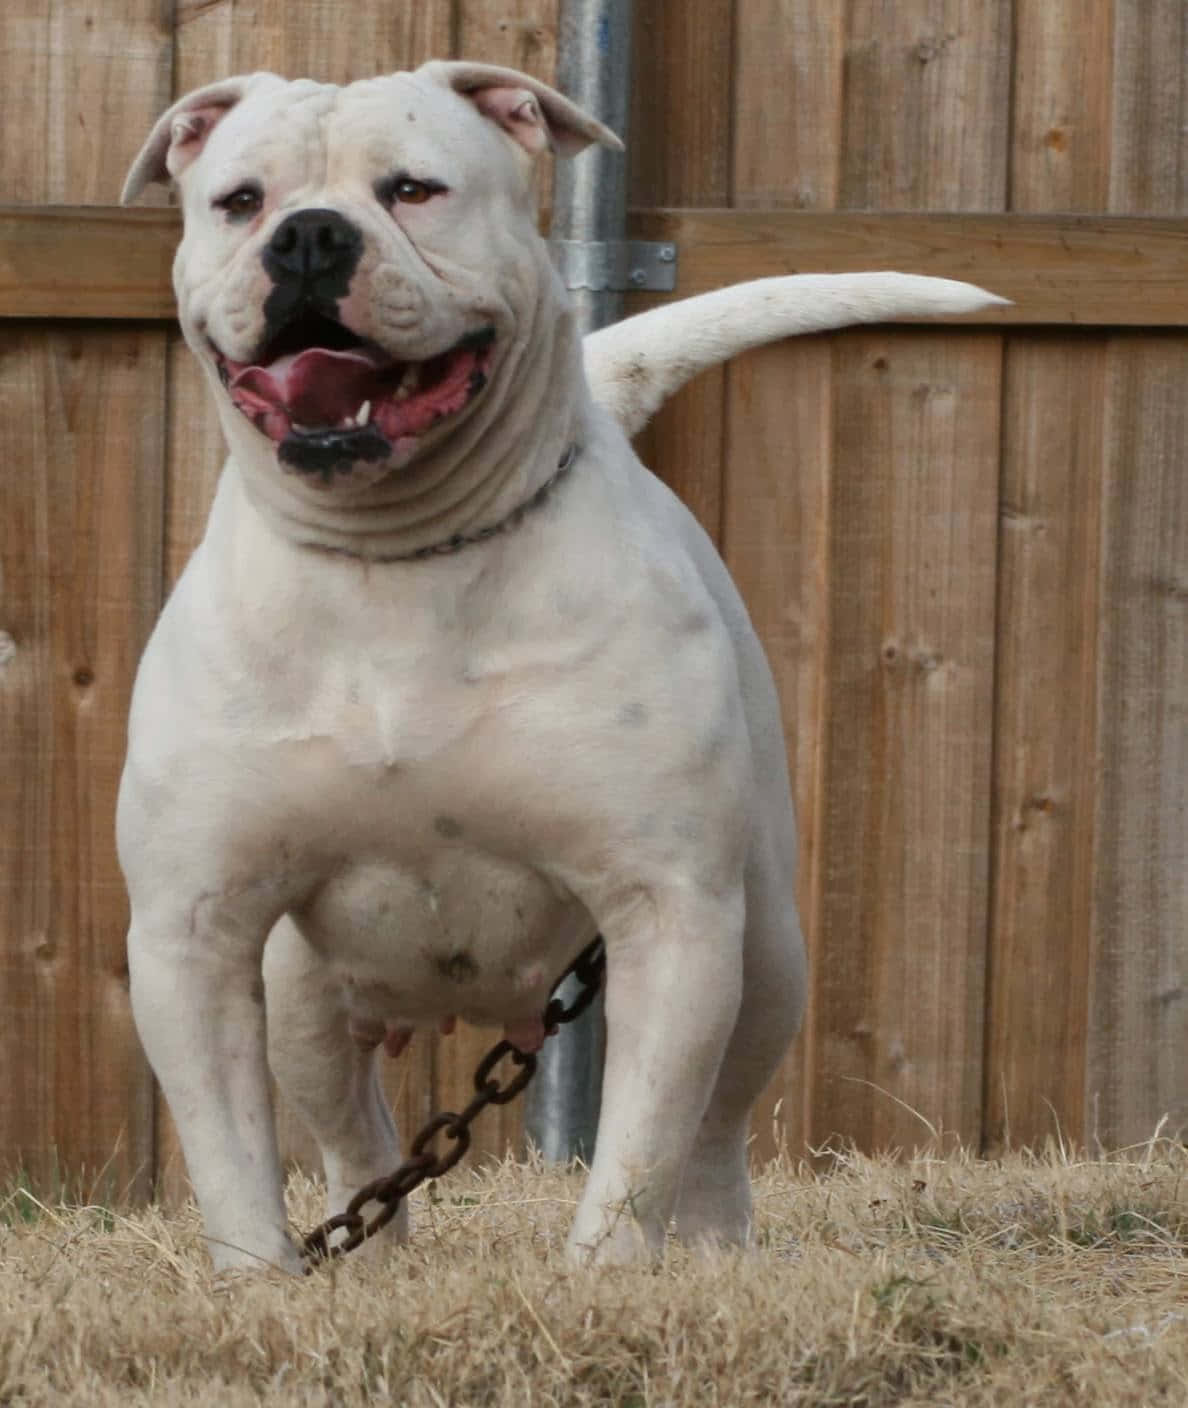 A smiling Bulldog pup